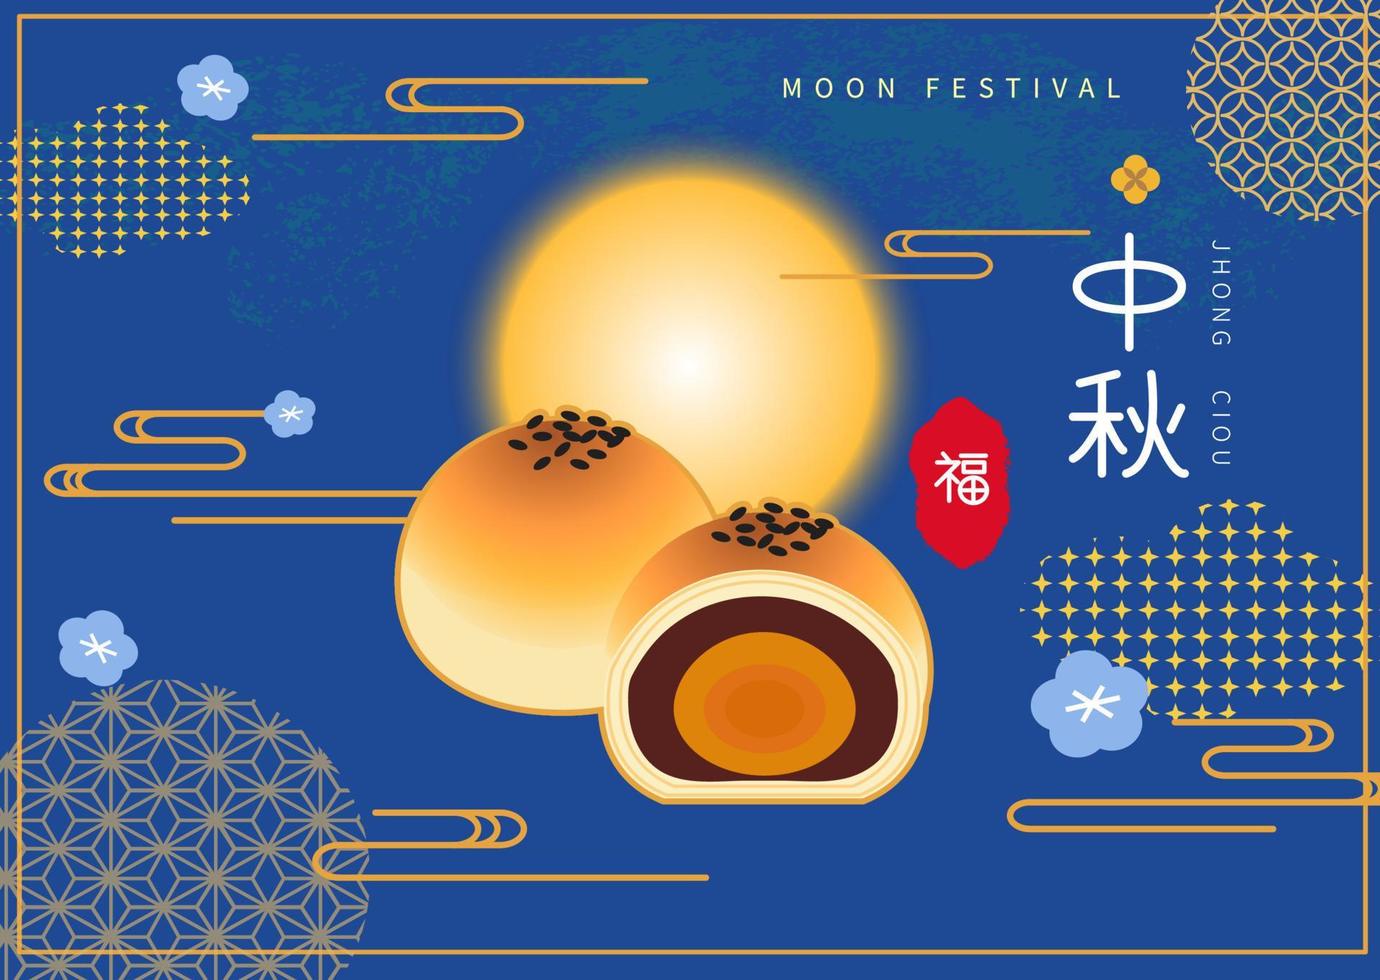 månen och månen tårta illustration på blå bakgrund. kinesisk översättning glad midhöstfestival vektor